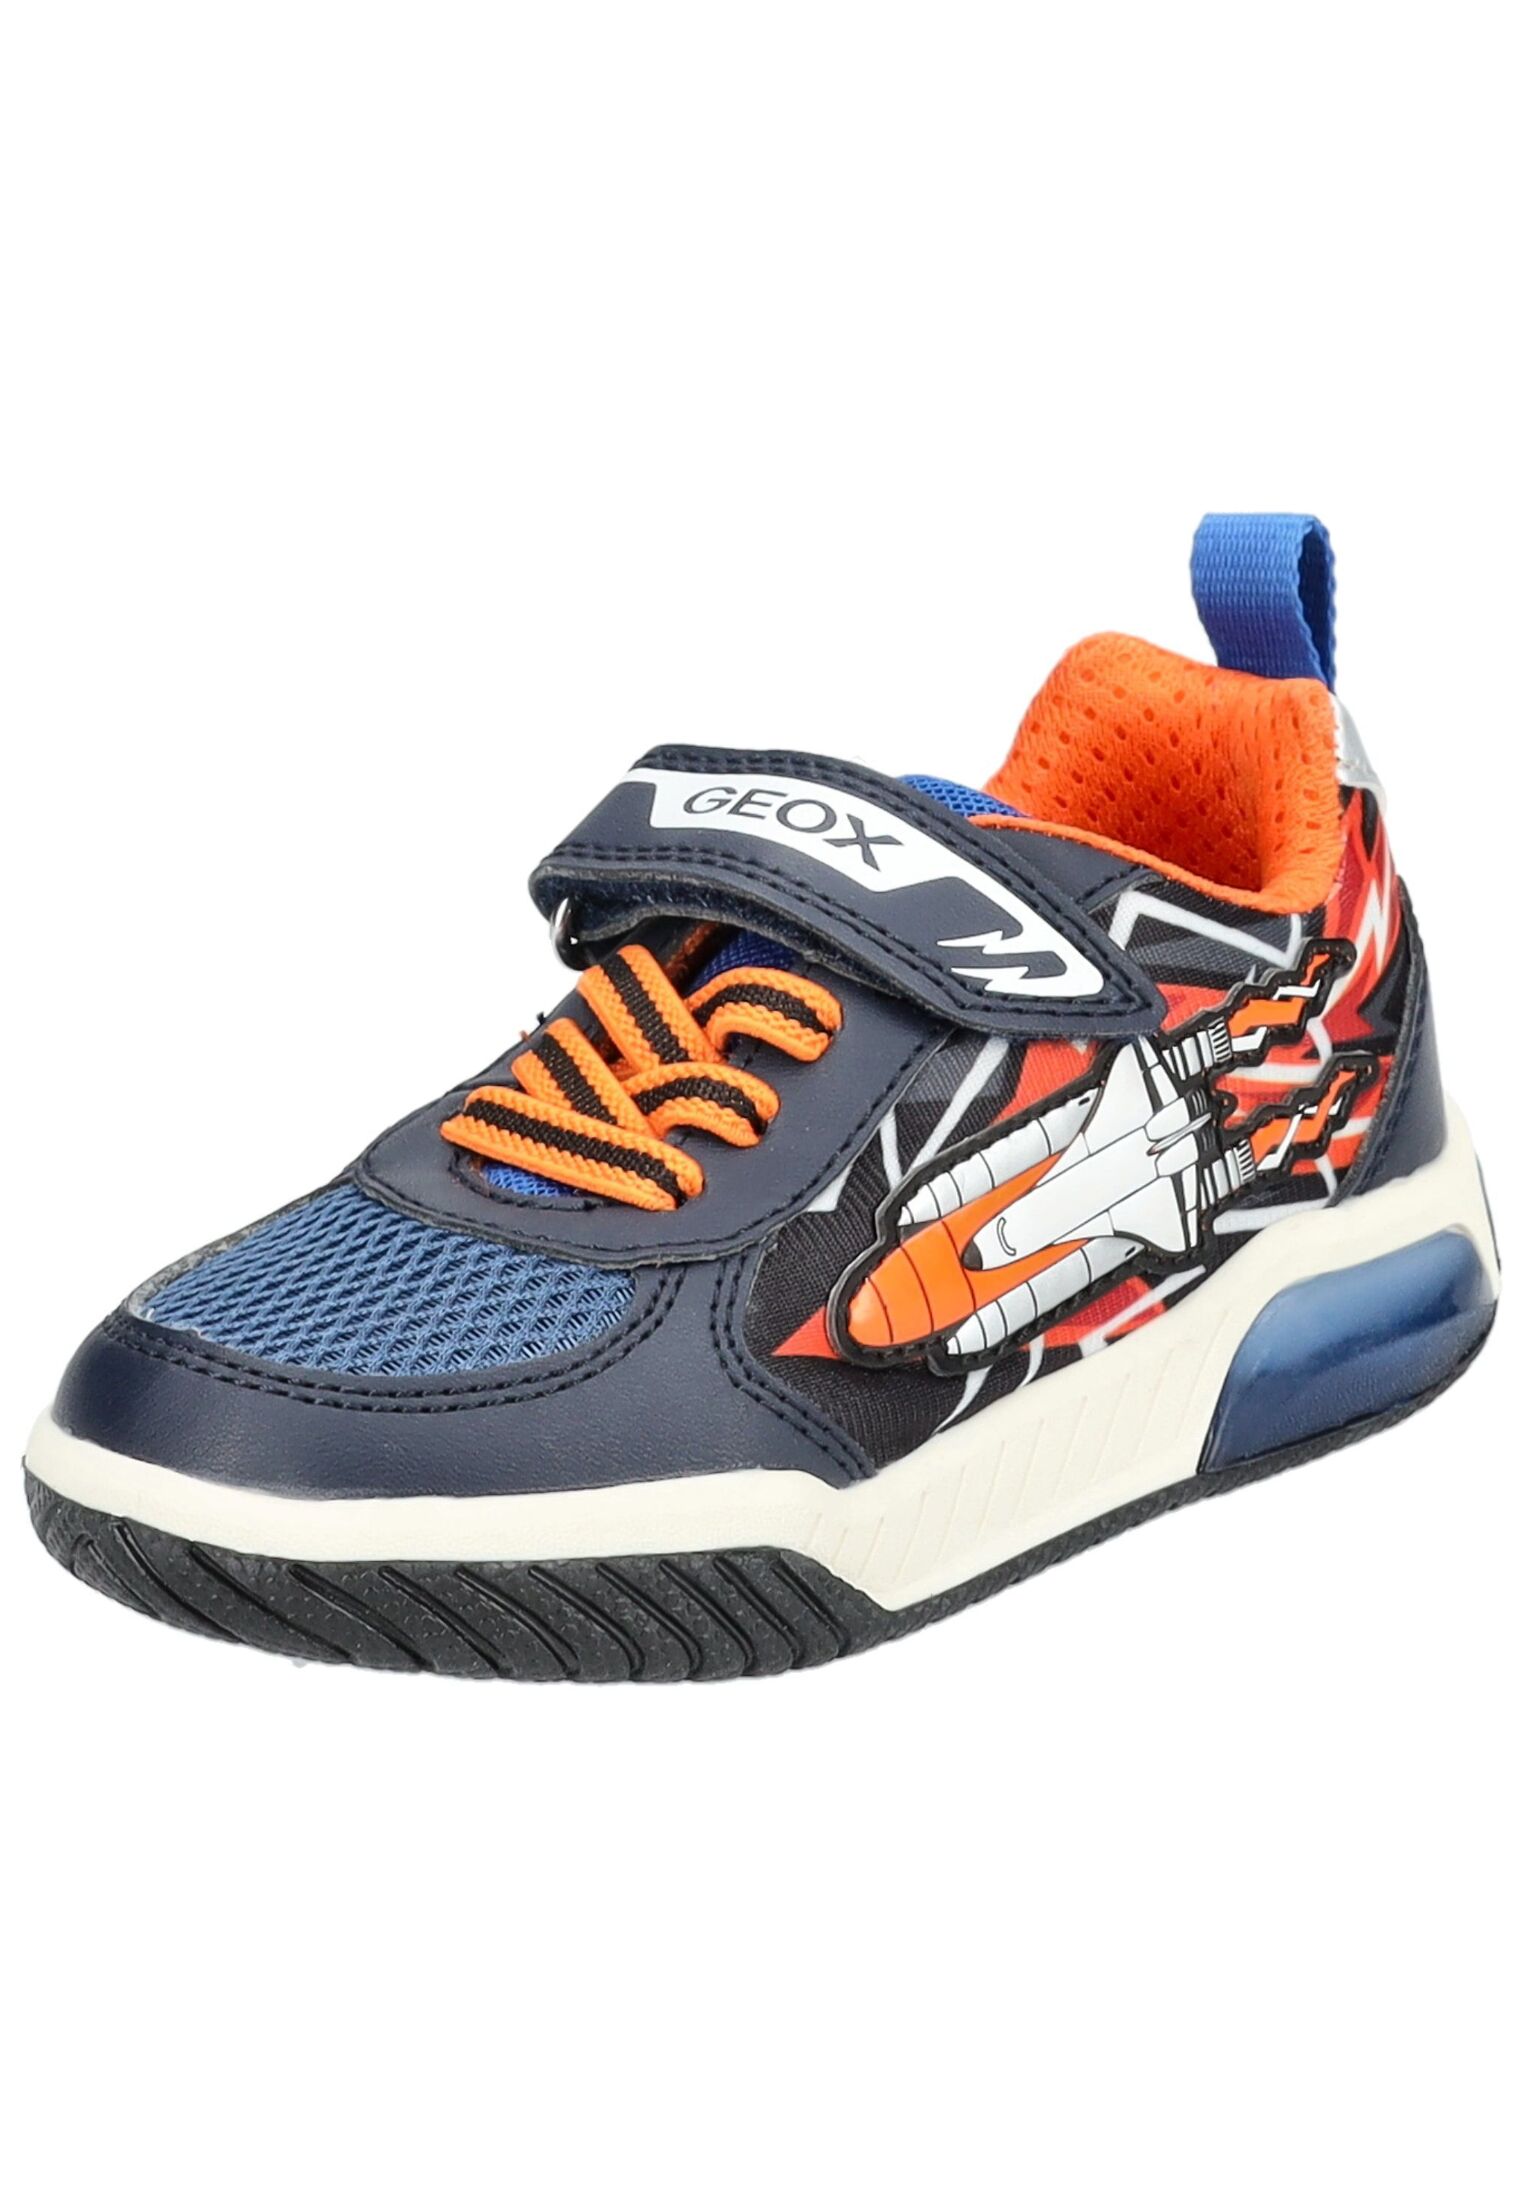 Низкие кроссовки Geox, цвет Navy/Orange низкие кроссовки d vega geox цвет navy blue